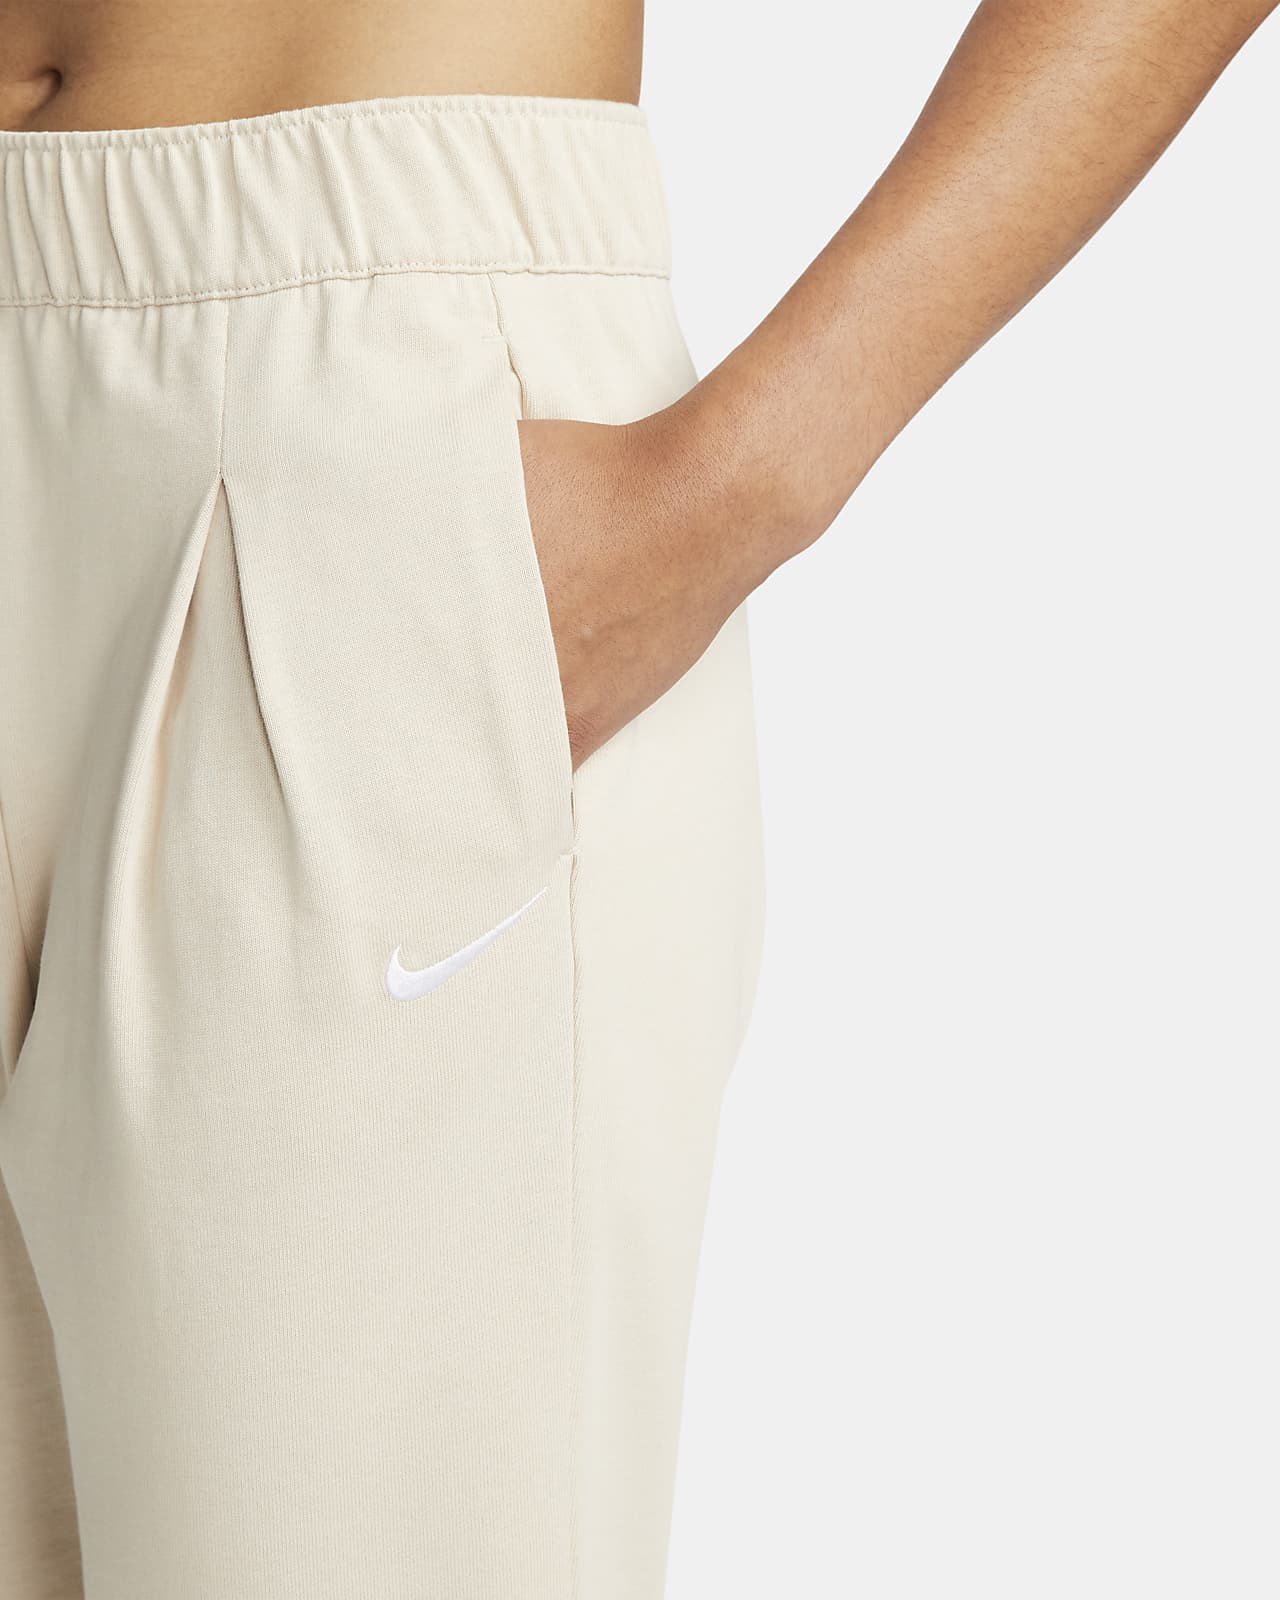 Nike Sportswear Women's Jersey Capri Pants